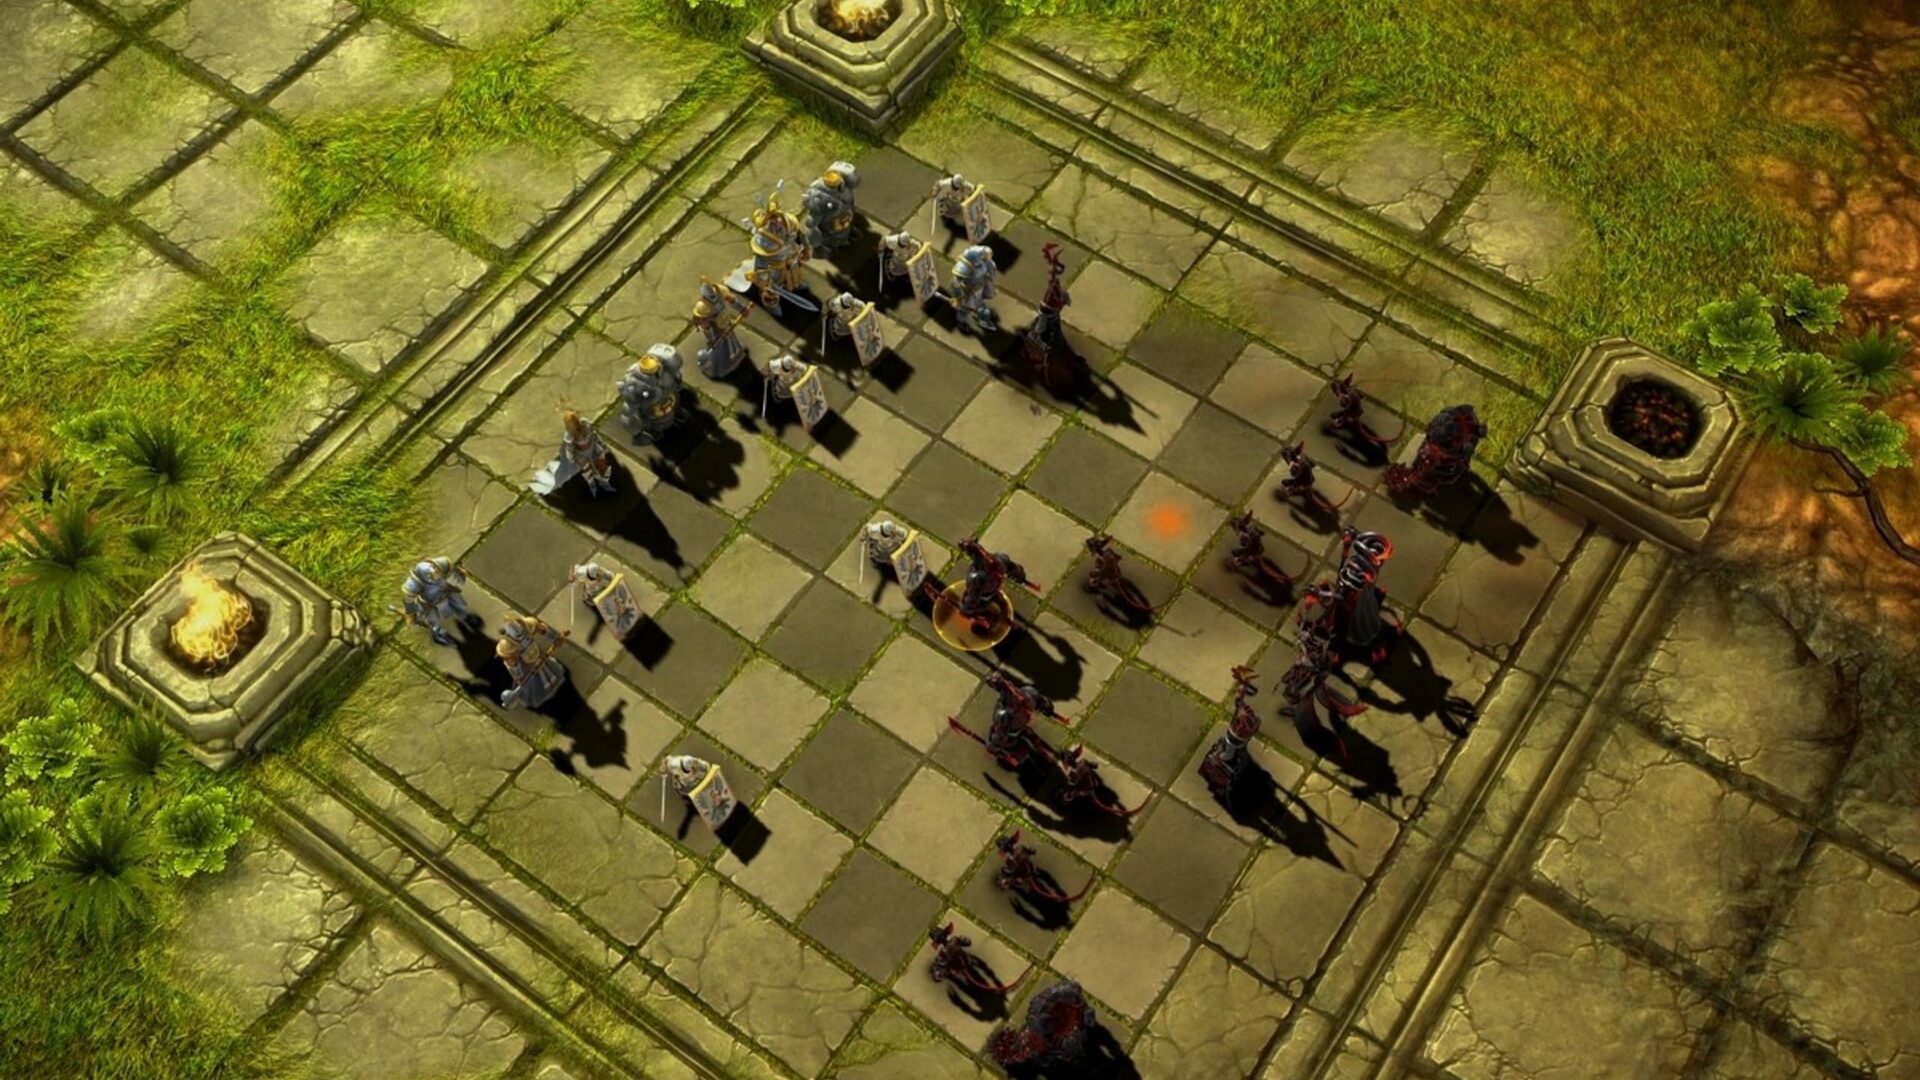 Battle vs Chess Steam Key GLOBAL